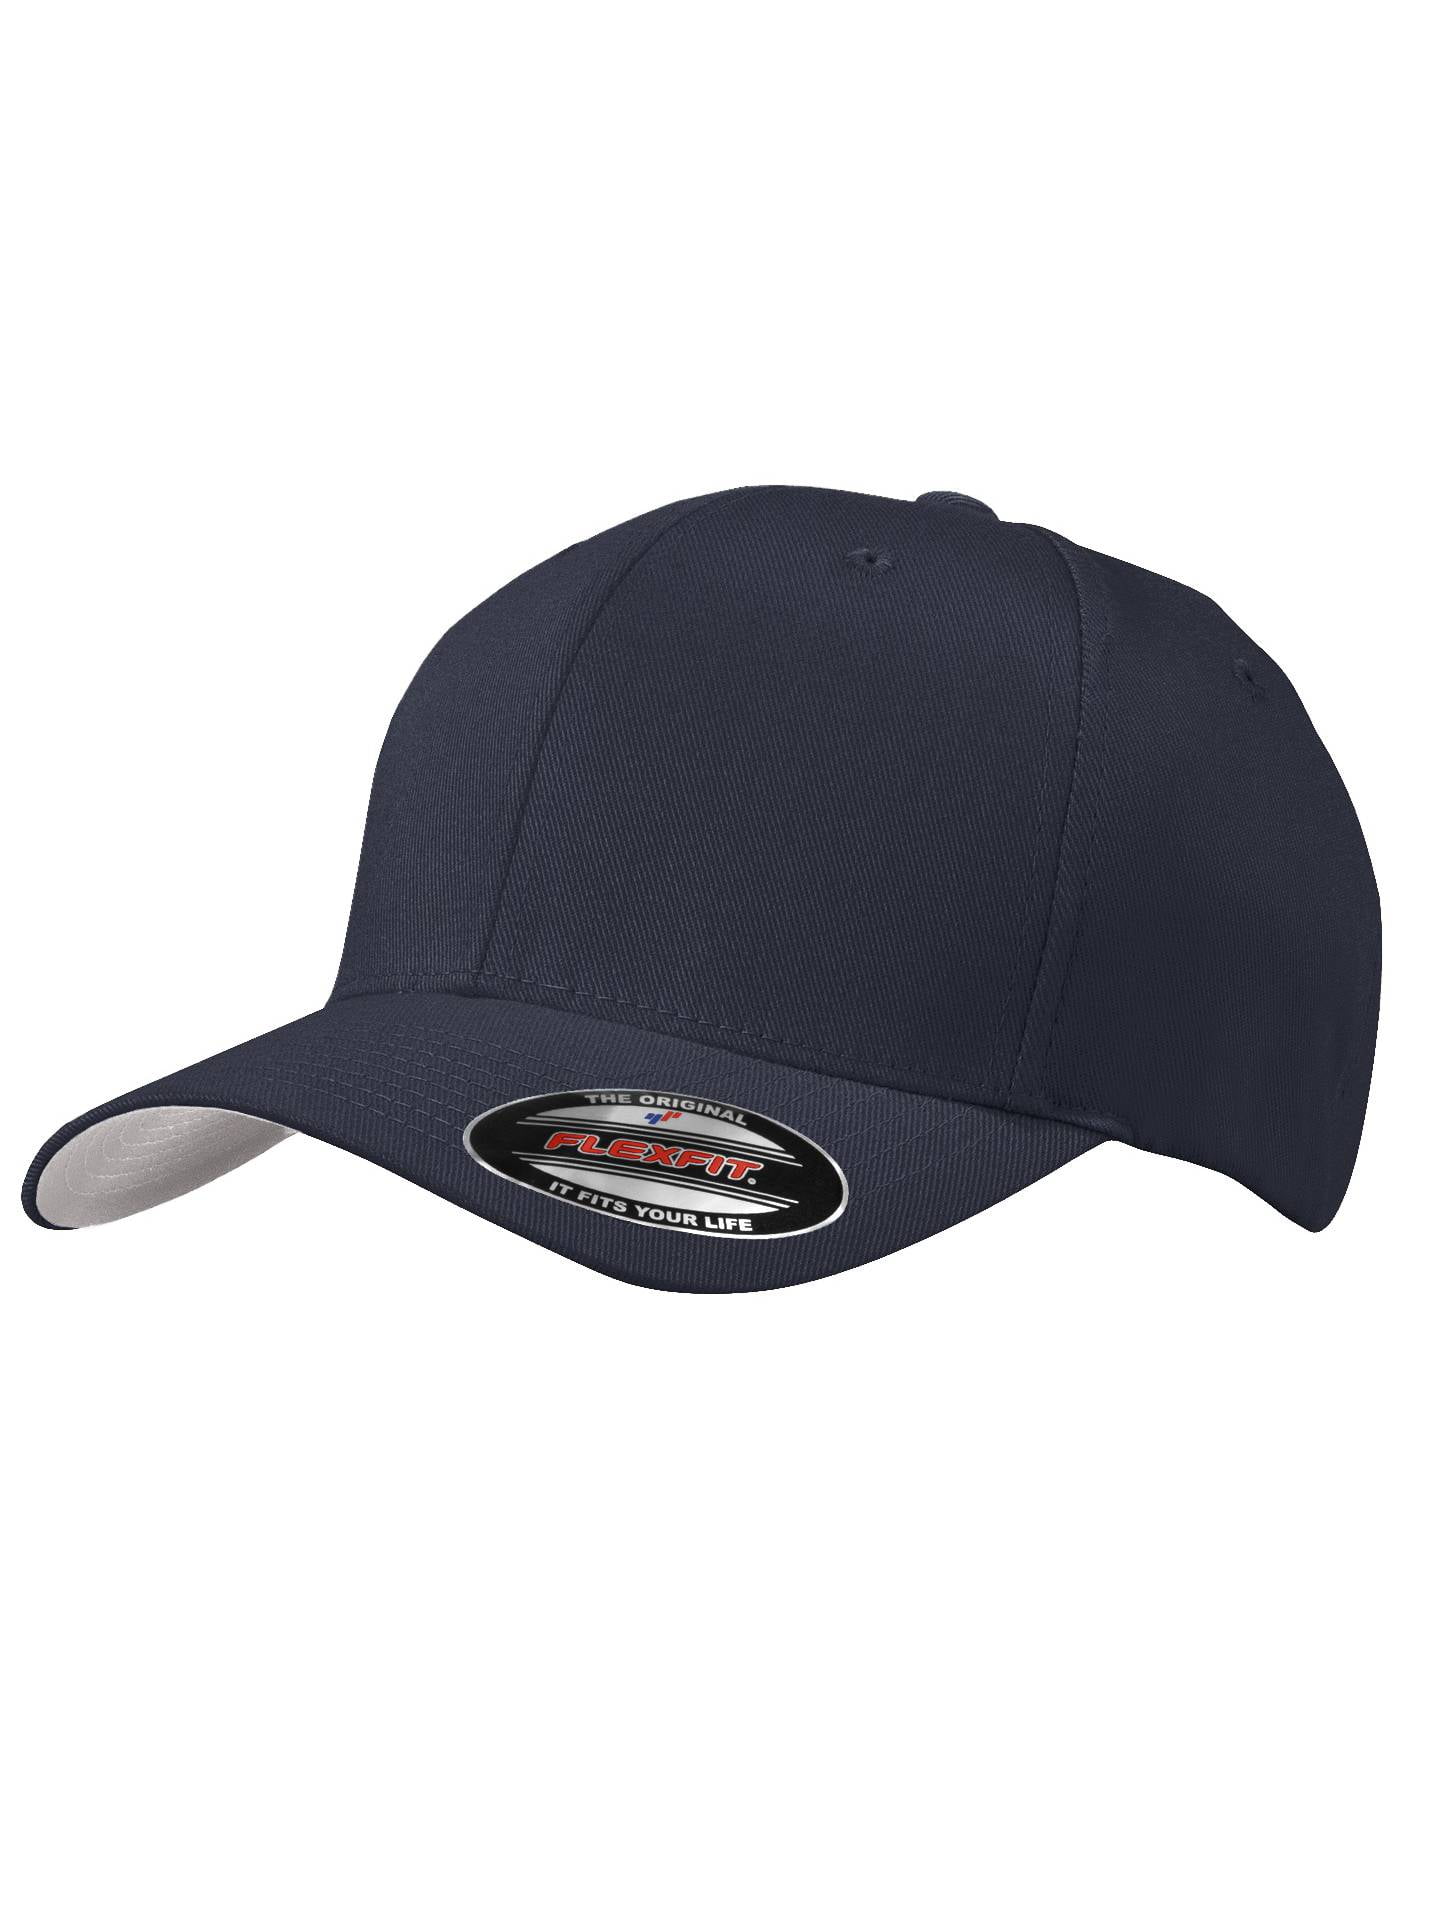 Top Headwear Flex Fit Baseball Cap - Olive Drab/Green - Small/Medium